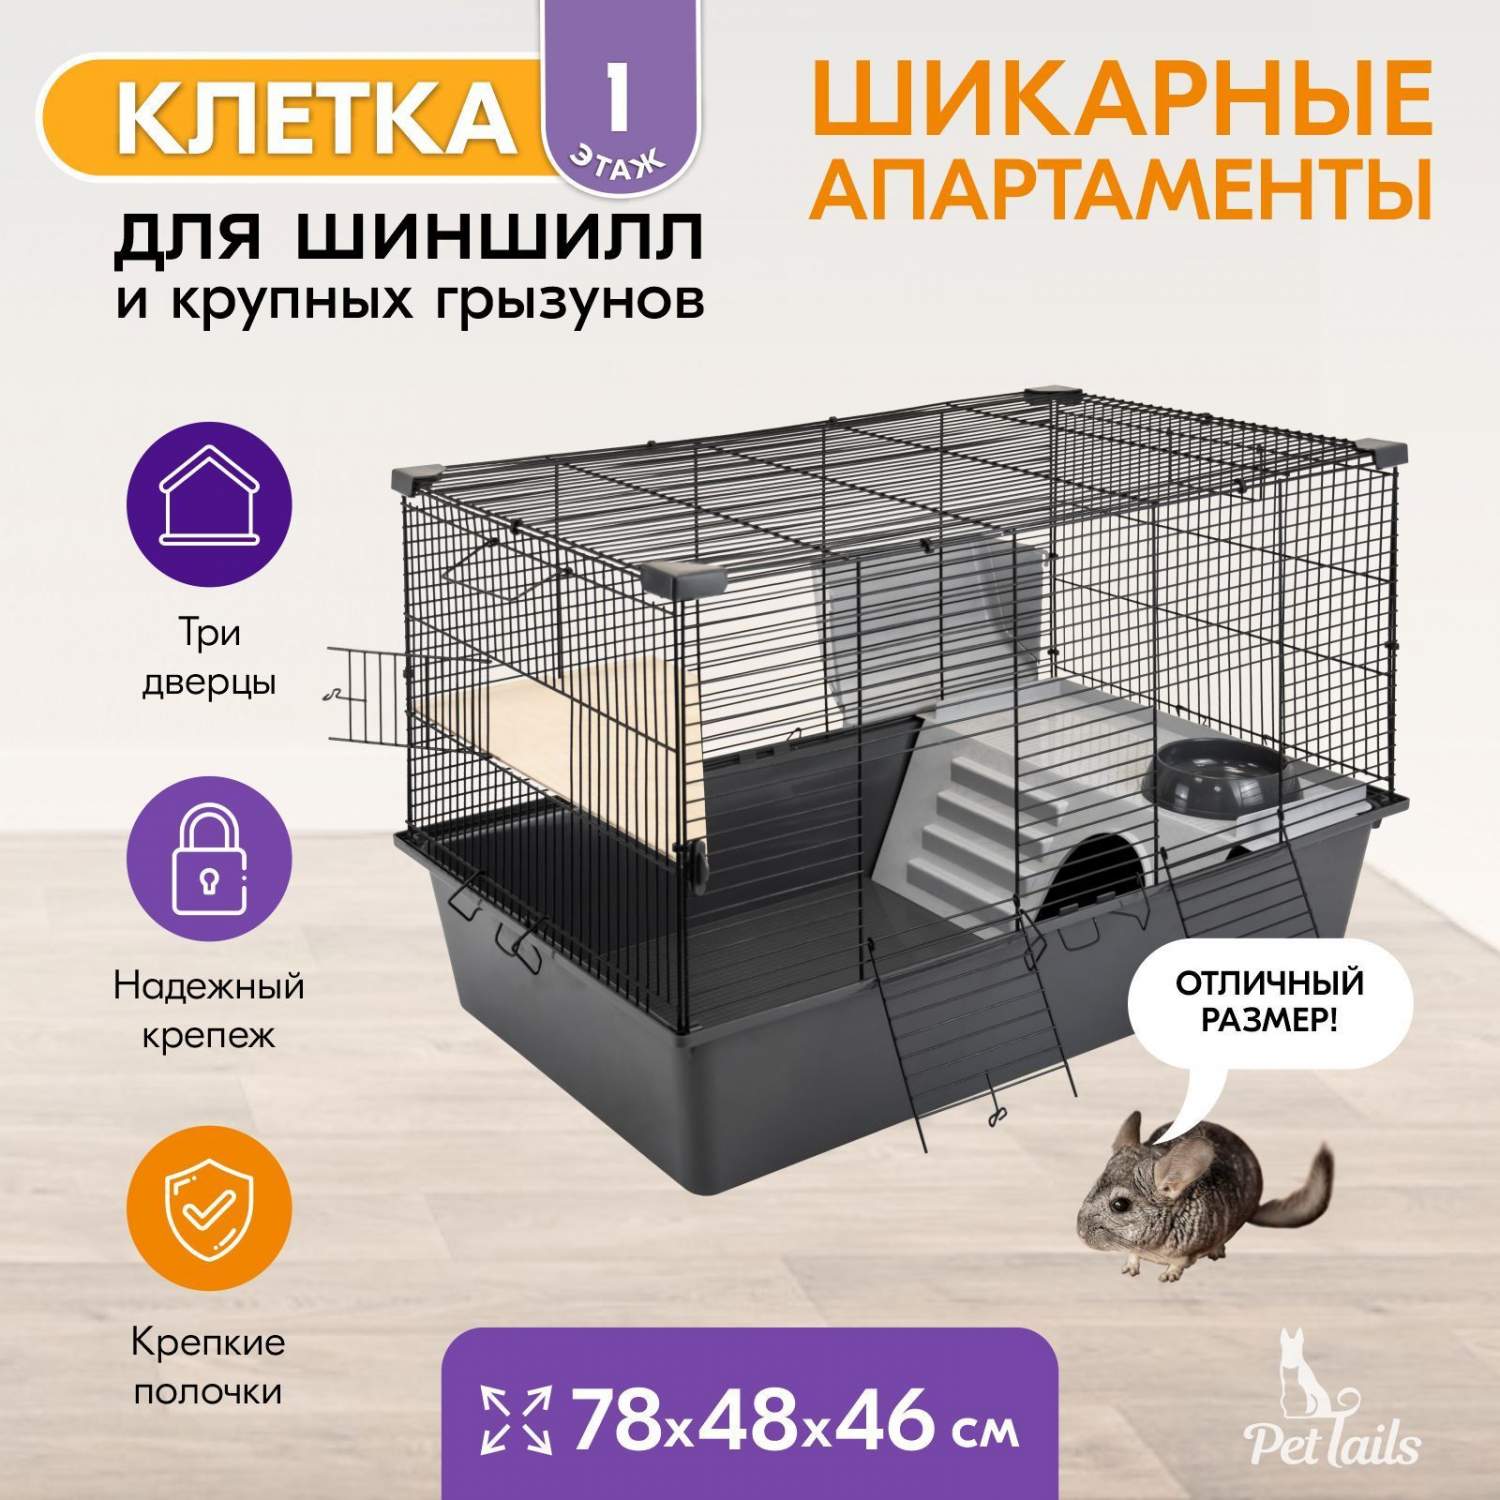 Клетка для грызунов купить в Минске в интернет-магазине недорого | Интернет магазин ГиперЗоо